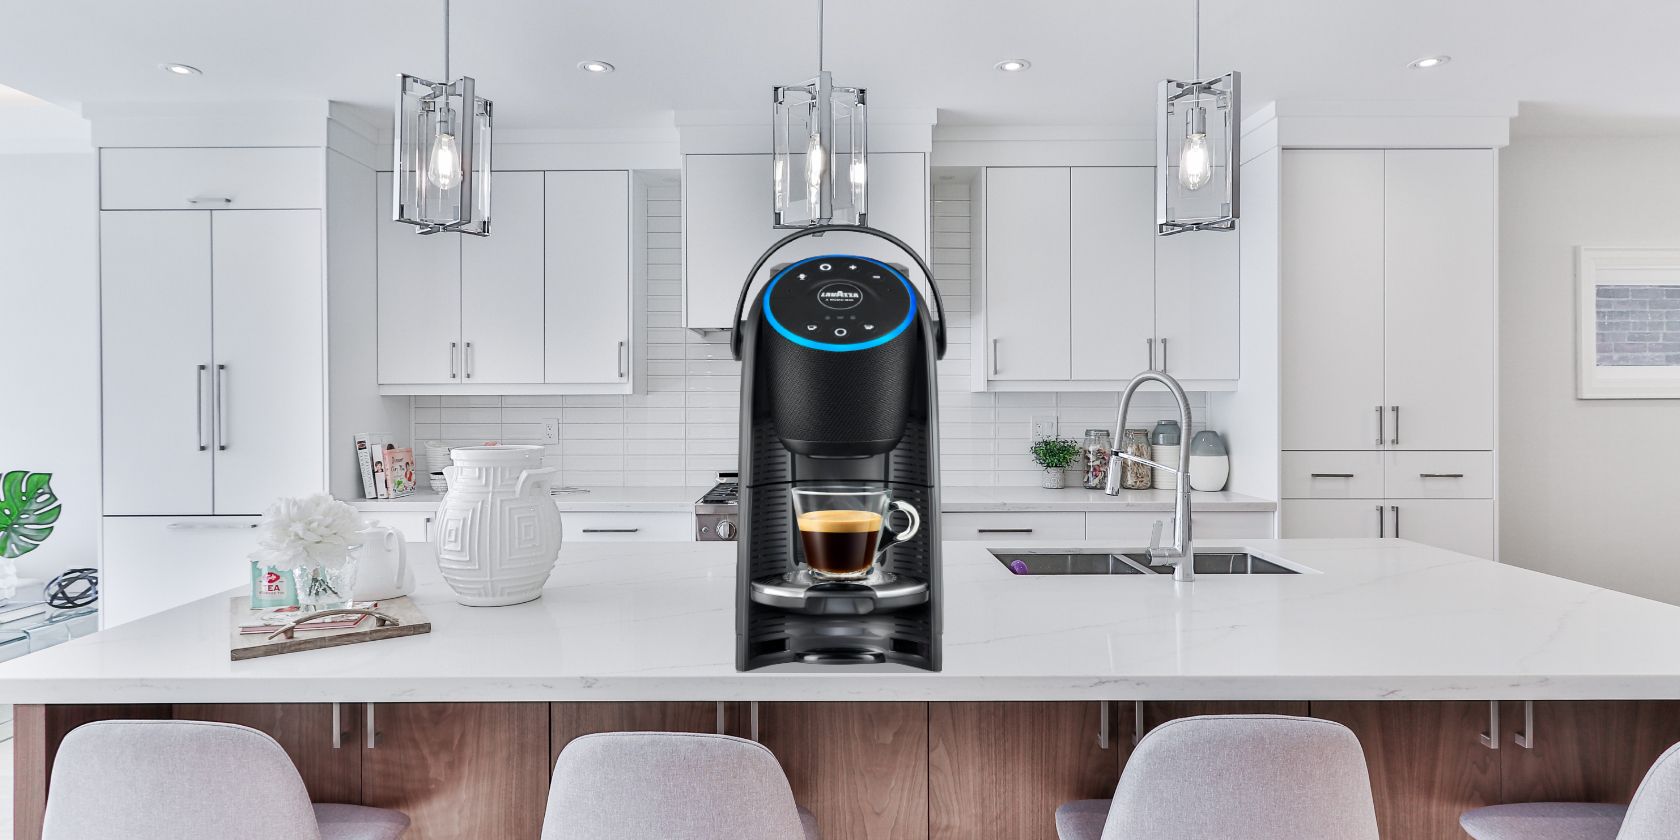 Lavazza Voicy review: Alexa, make me an espresso